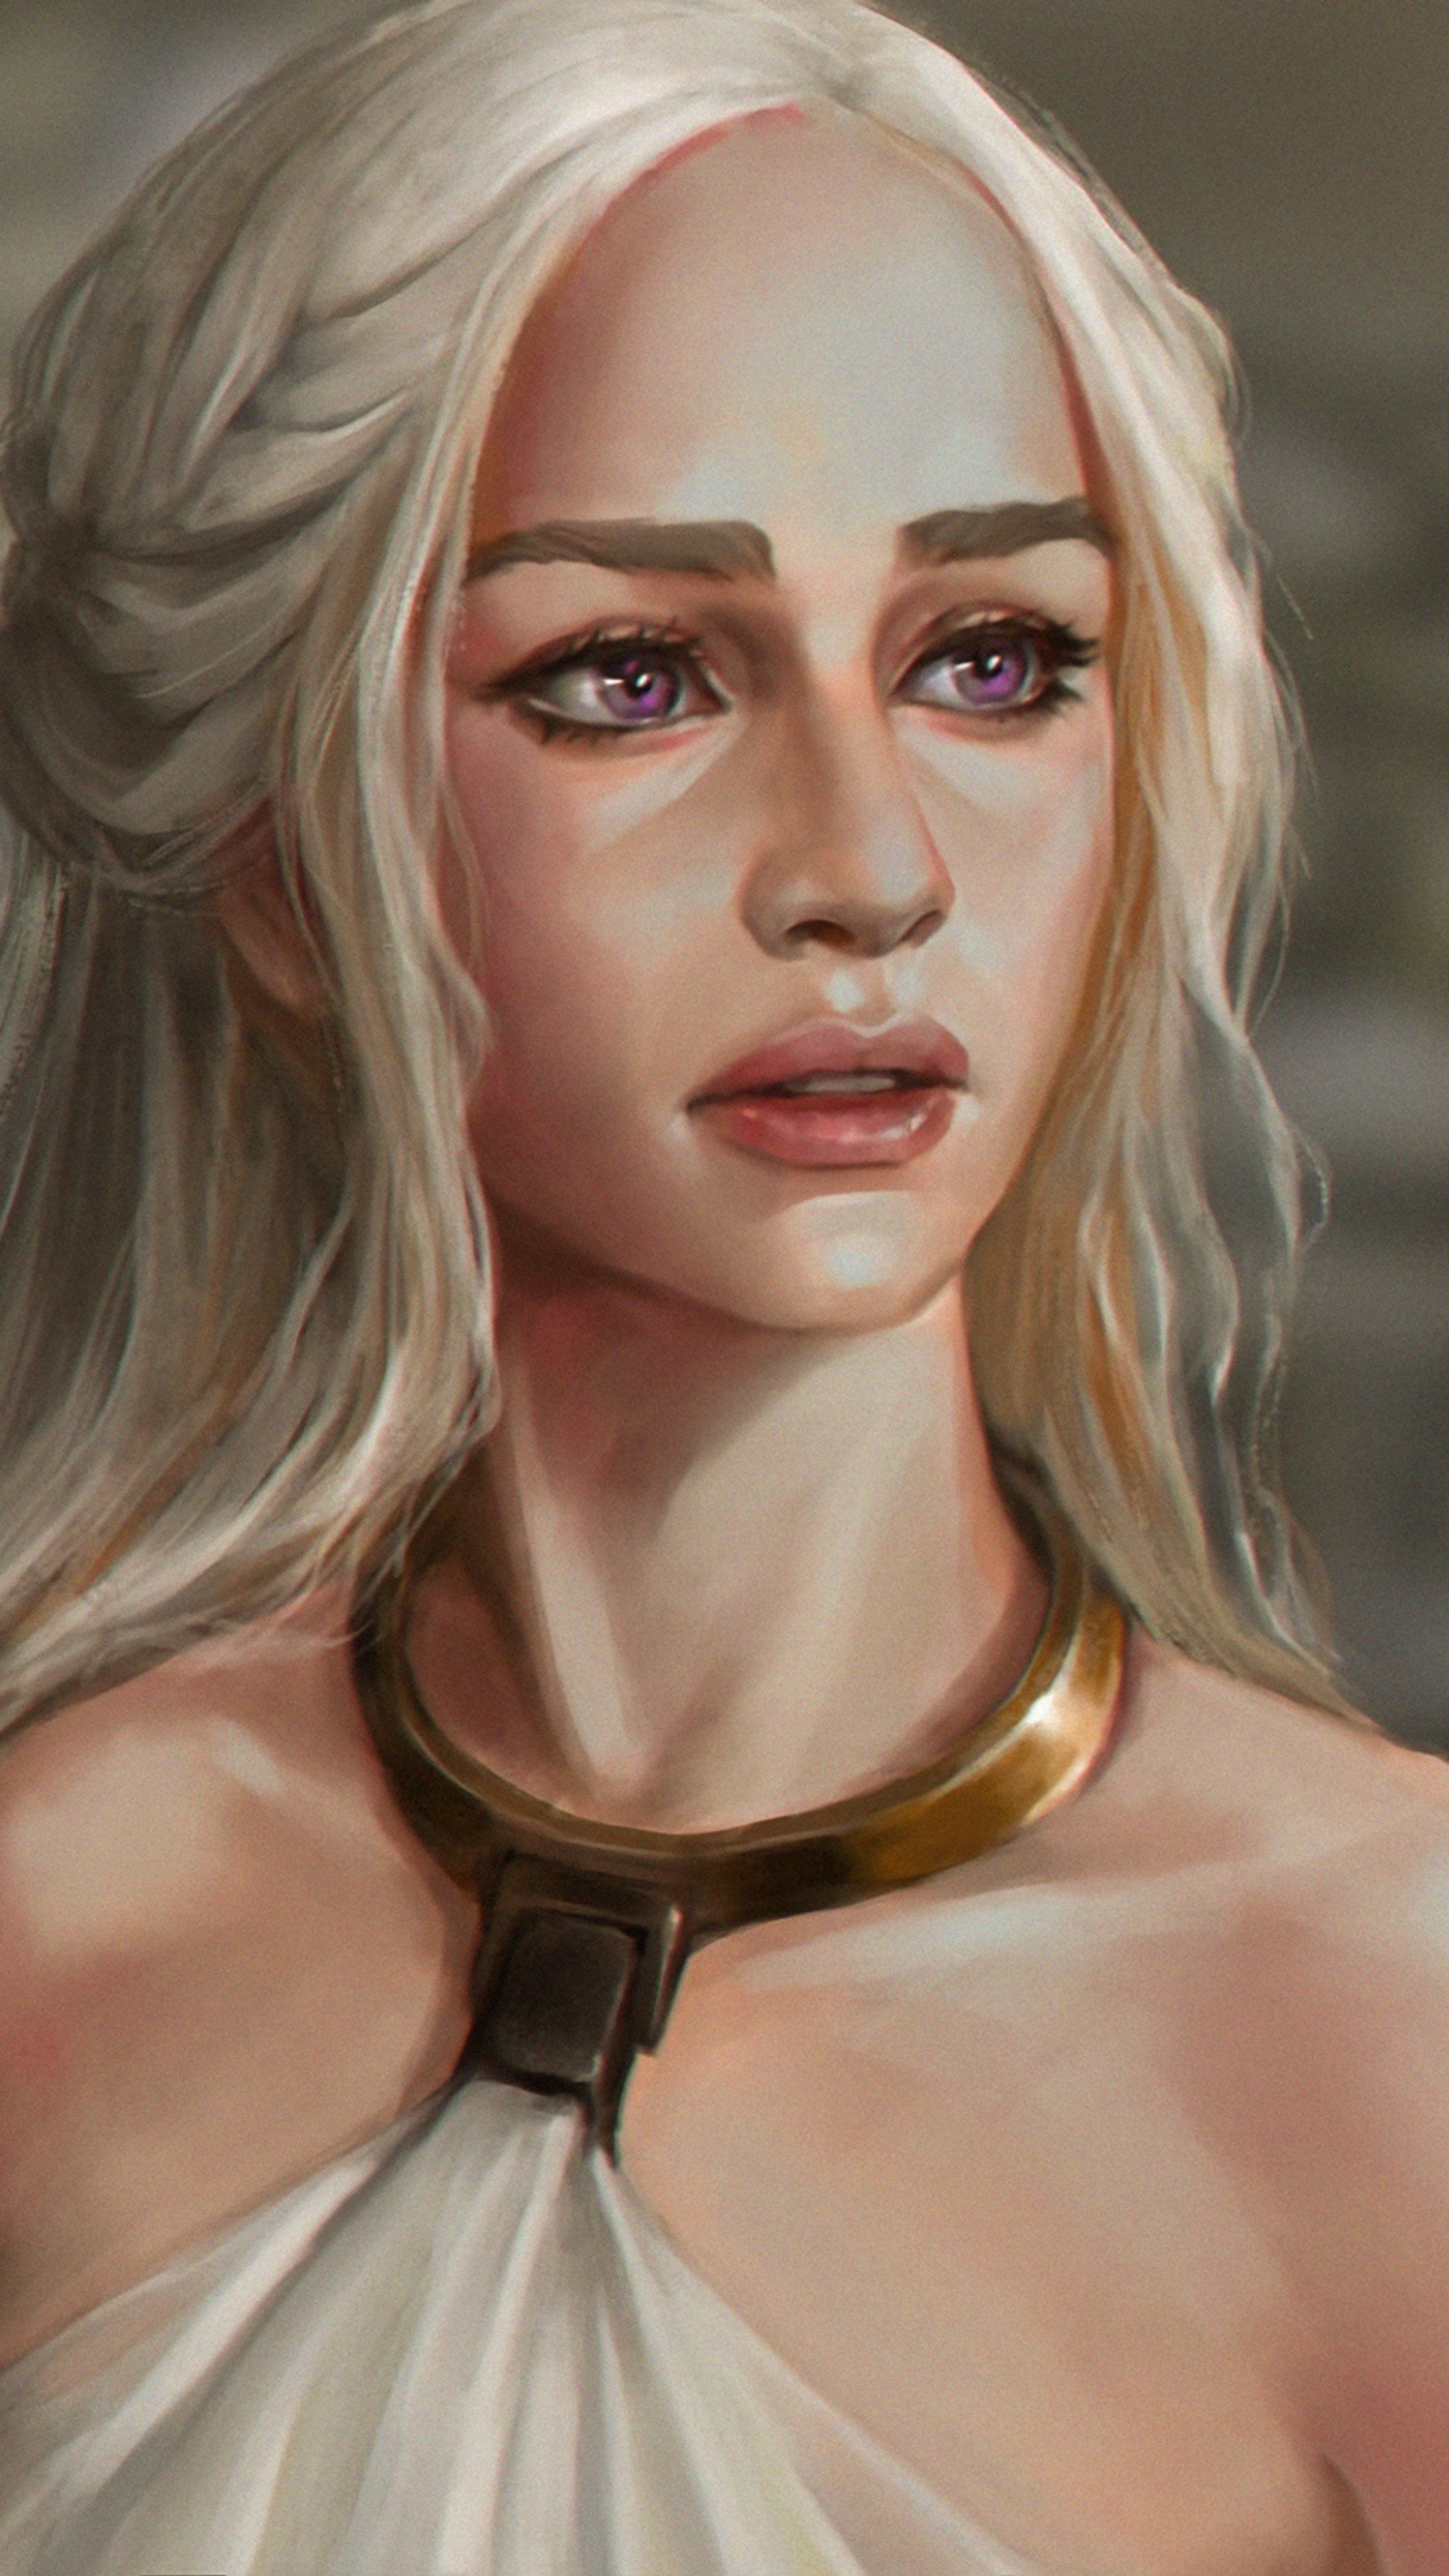 Daenerys Targaryen Fanart In 2160x3840 Resolution. daenerys-targaryen-fanar...